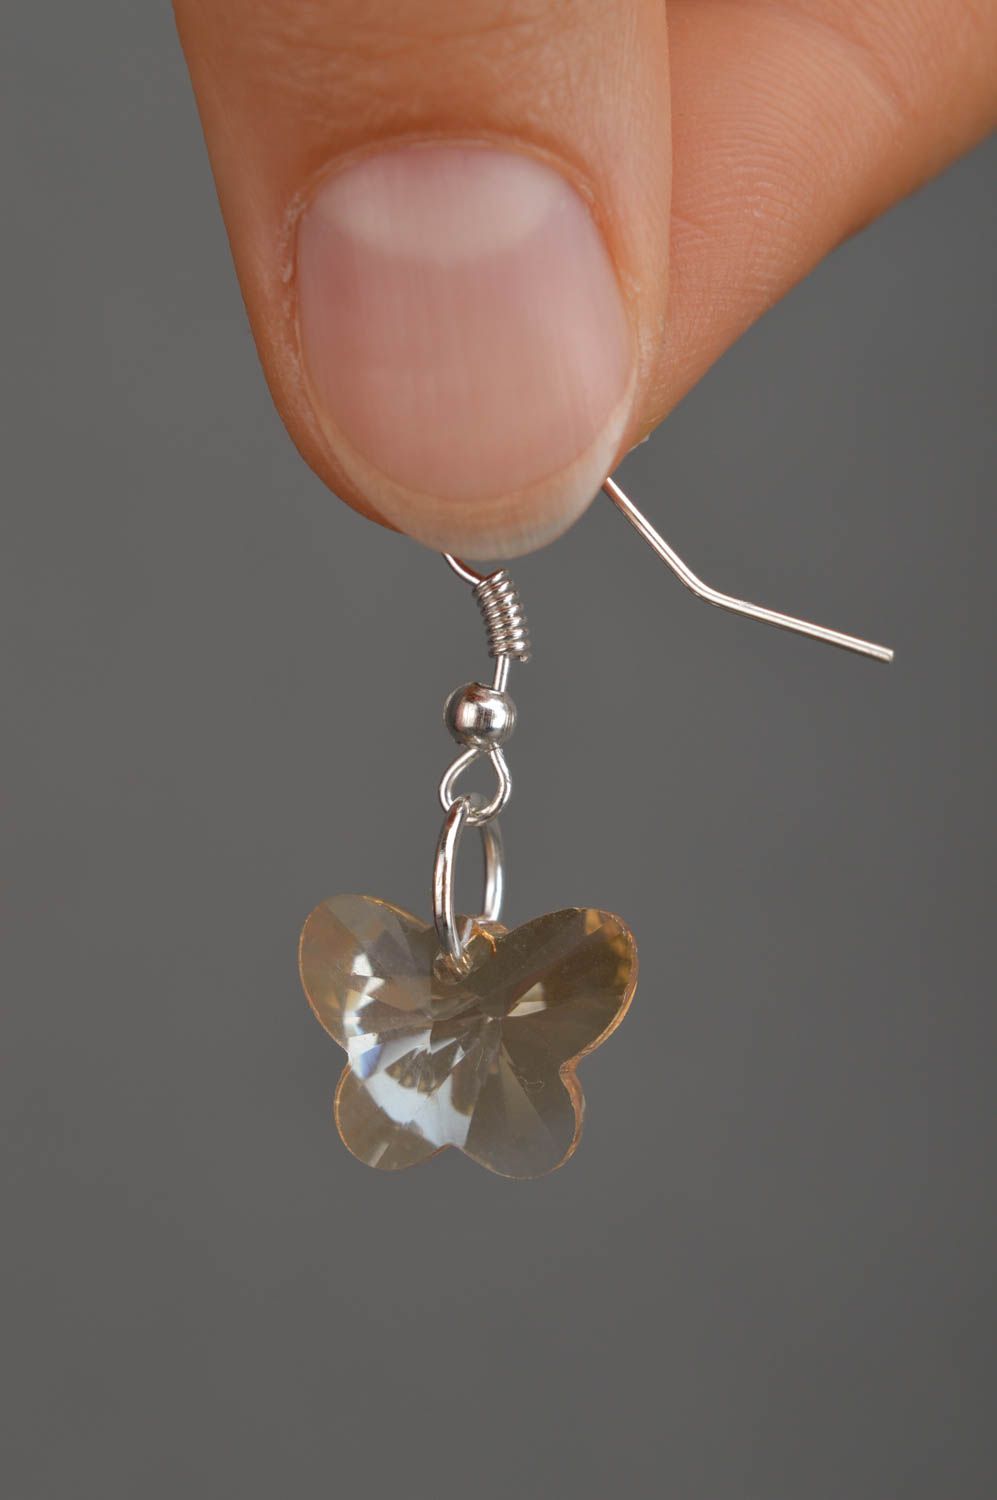 Handmade earrings unusual jewelry designer accessory glass earrings gift ideas photo 4